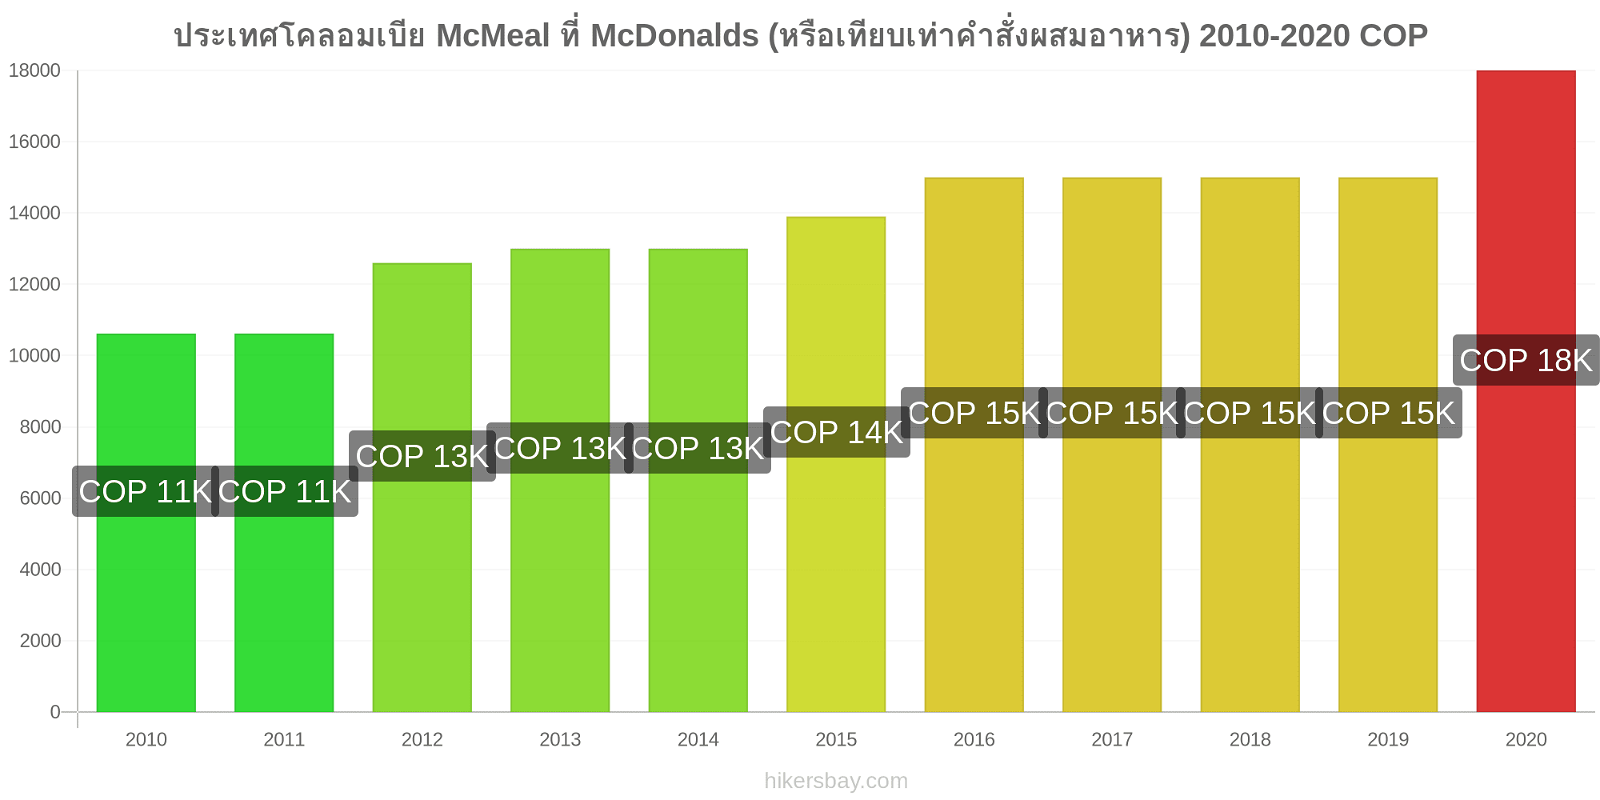 ประเทศโคลอมเบีย การเปลี่ยนแปลงราคา McMeal ที่ McDonalds (หรือเทียบเท่าคำสั่งผสมอาหาร) hikersbay.com